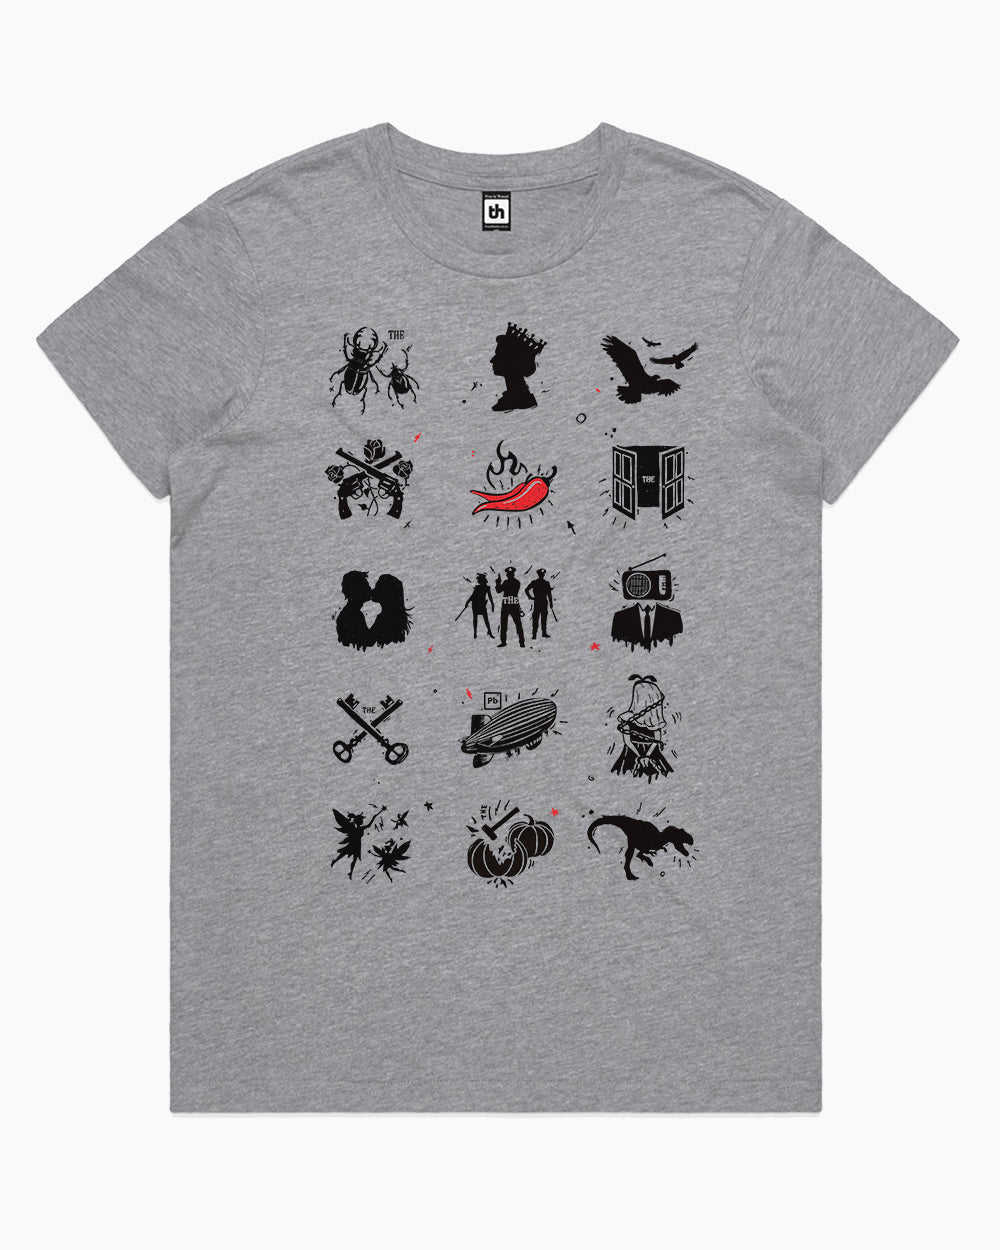 Bands T-Shirt Australia Online #colour_grey